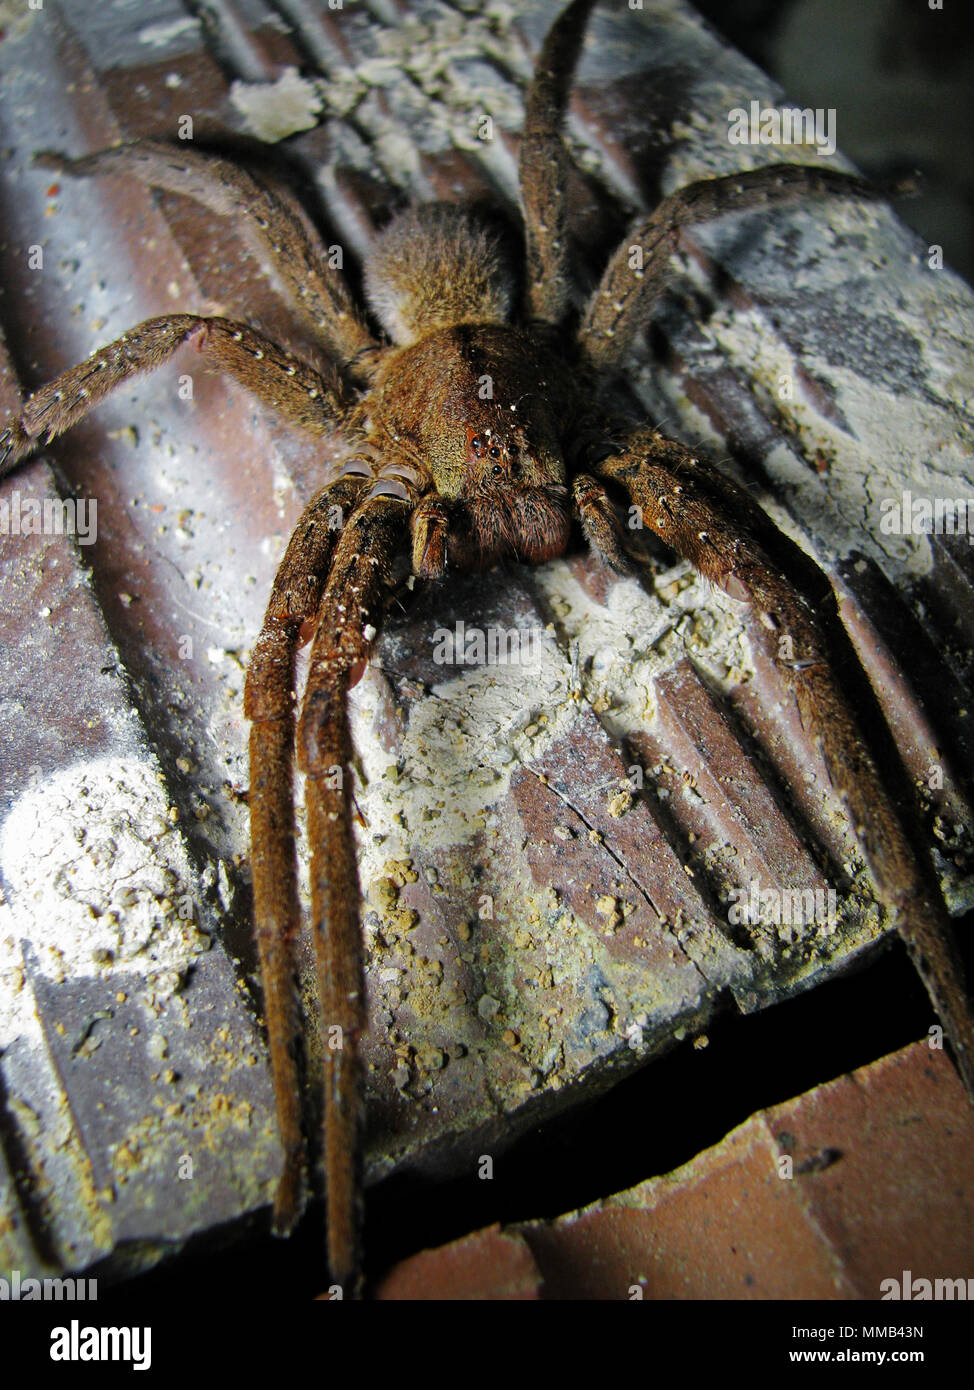 Phoneutria (errance brésilien armadeira, spider) sur un tas de briques, également connu sous le nom de l'araignée banane Banque D'Images